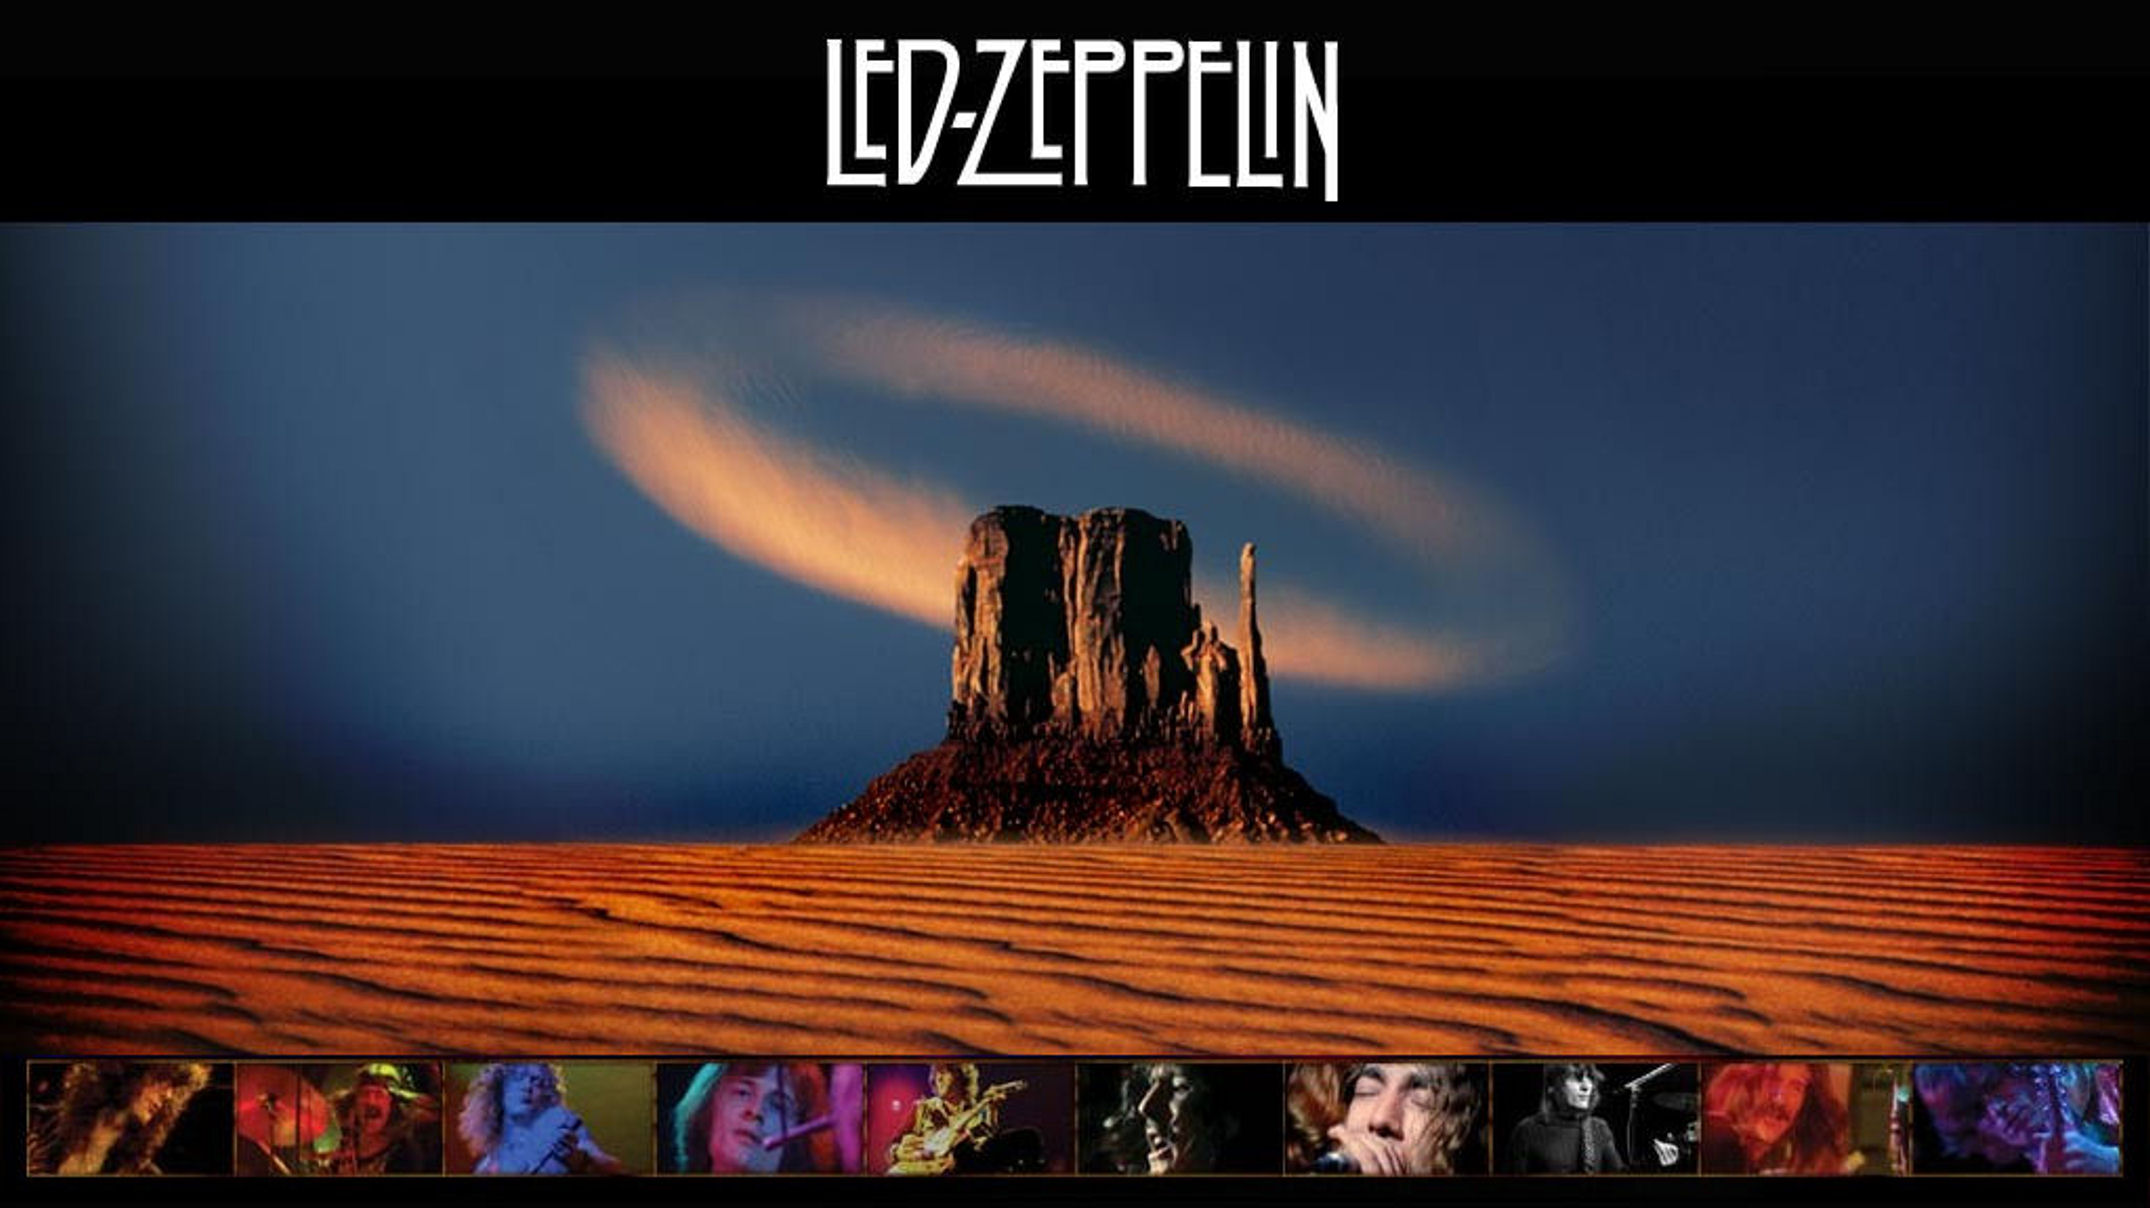 Led Zeppelin Computer Wallpapers Desktop Backgrounds 2150x1208 ID